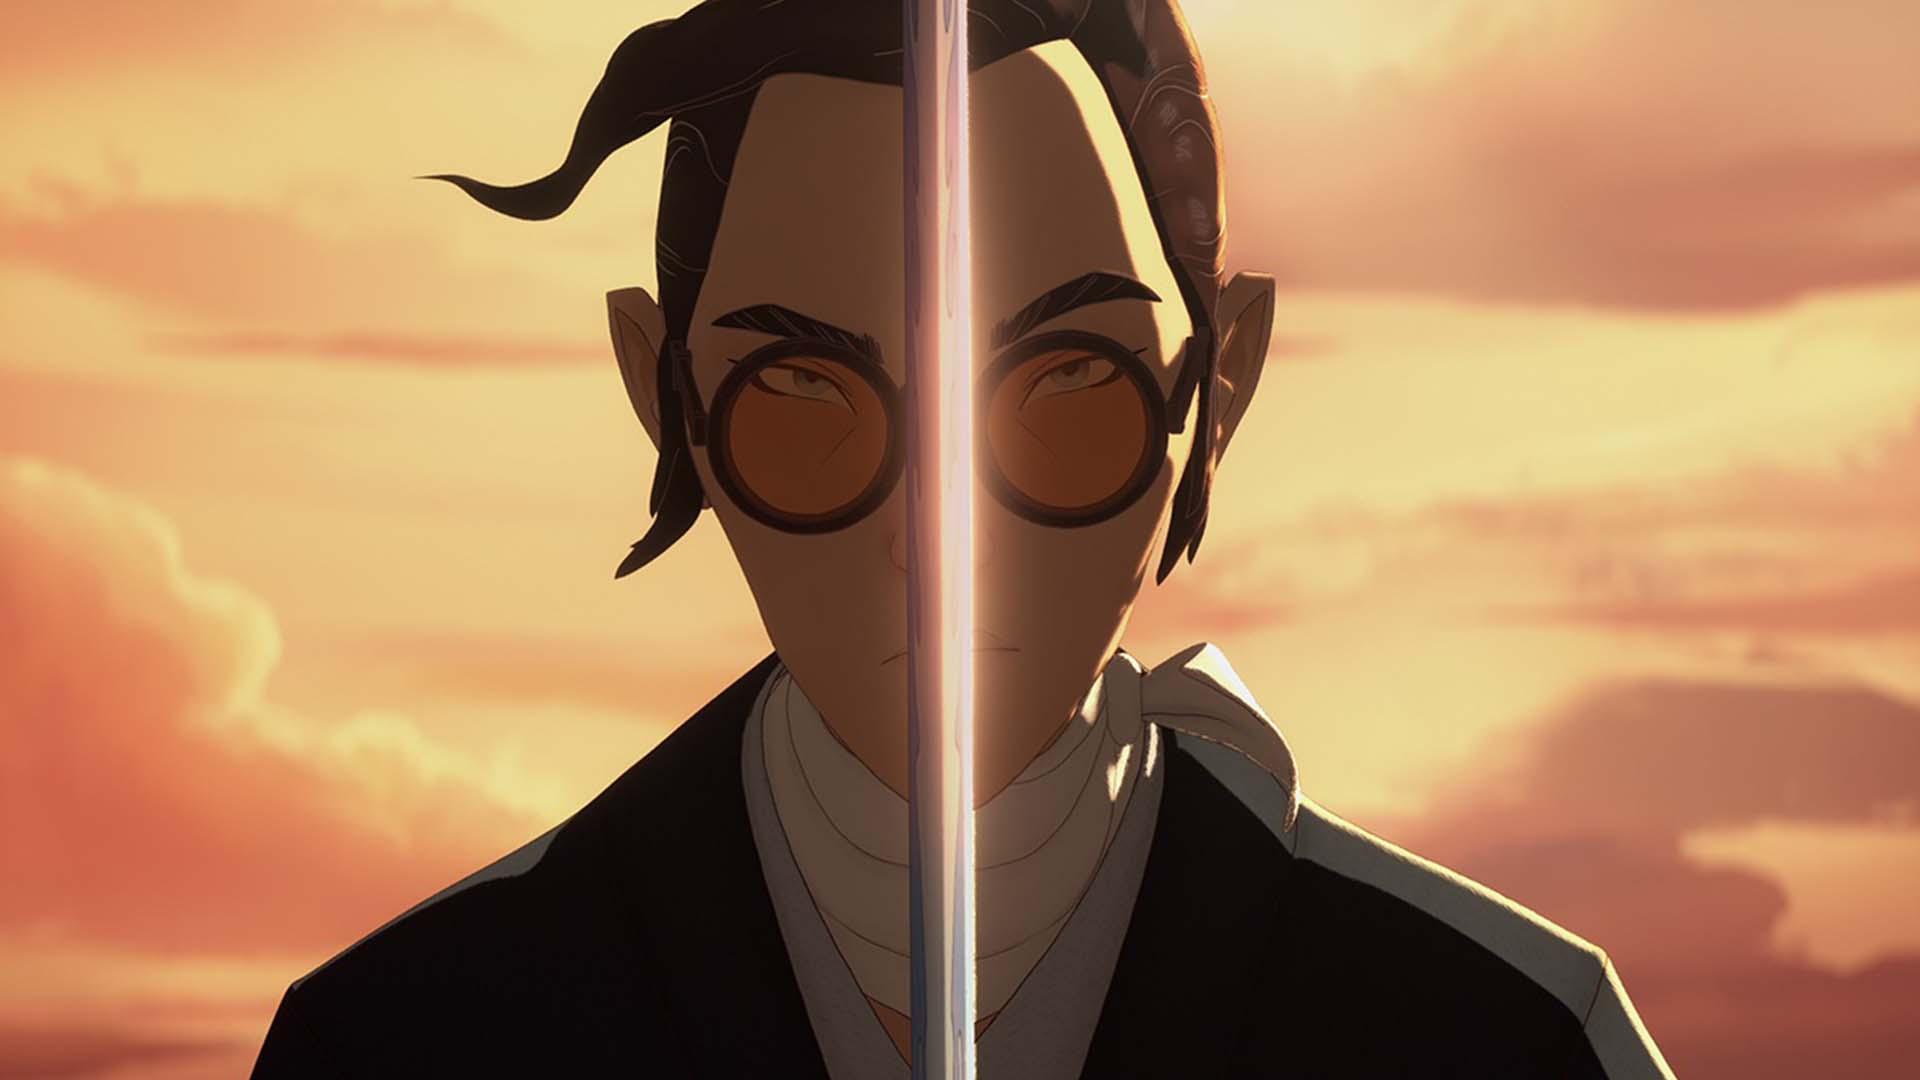 شخصیت میزو در انیمیشن blue eye samurai شمشیر را مقابل صورت گرفته است